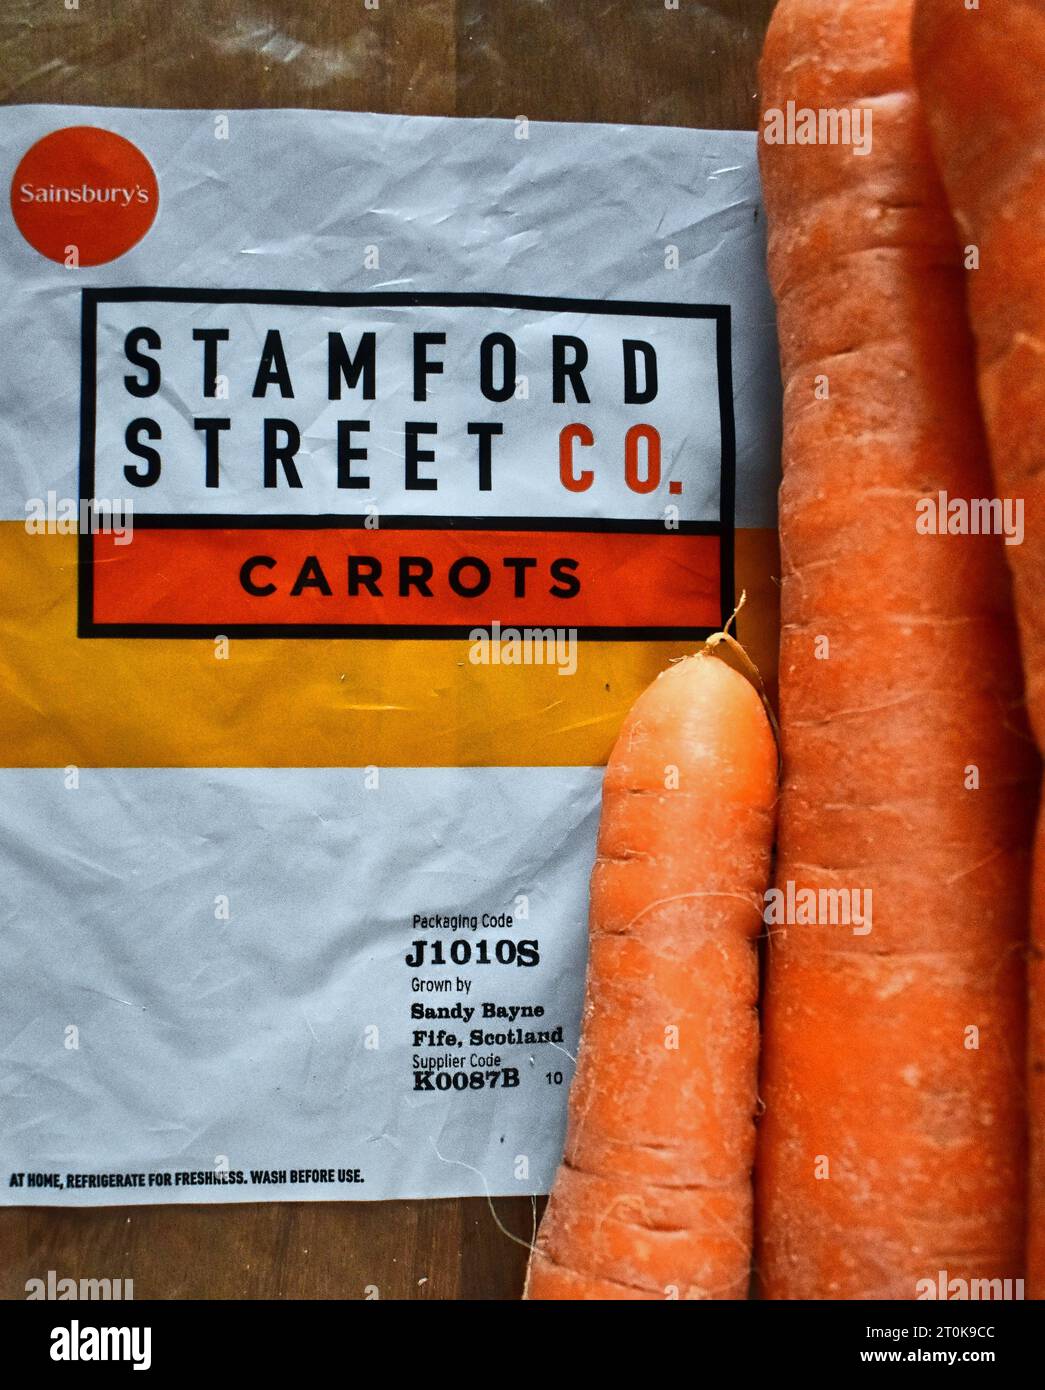 Sainsbury's Supermarket a déplacé ses marques de valeur, y compris les produits frais tels que les carottes, vers une nouvelle étiquette - Stamford Street Co. Banque D'Images